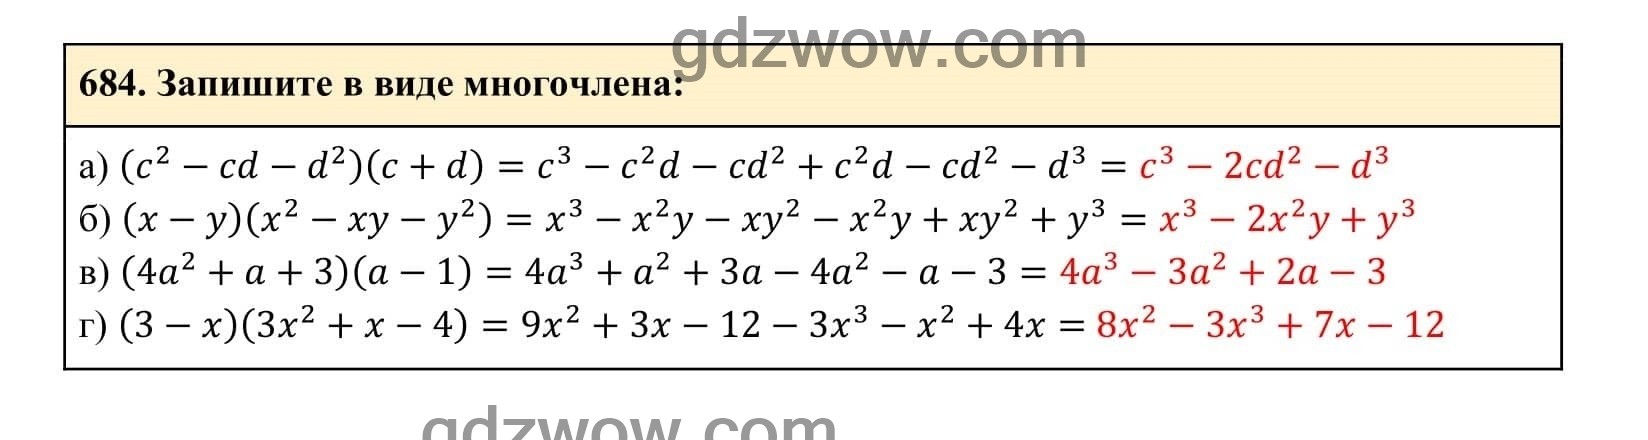 Упражнение 684 - ГДЗ по Алгебре 7 класс Учебник Макарычев (решебник) - GDZwow